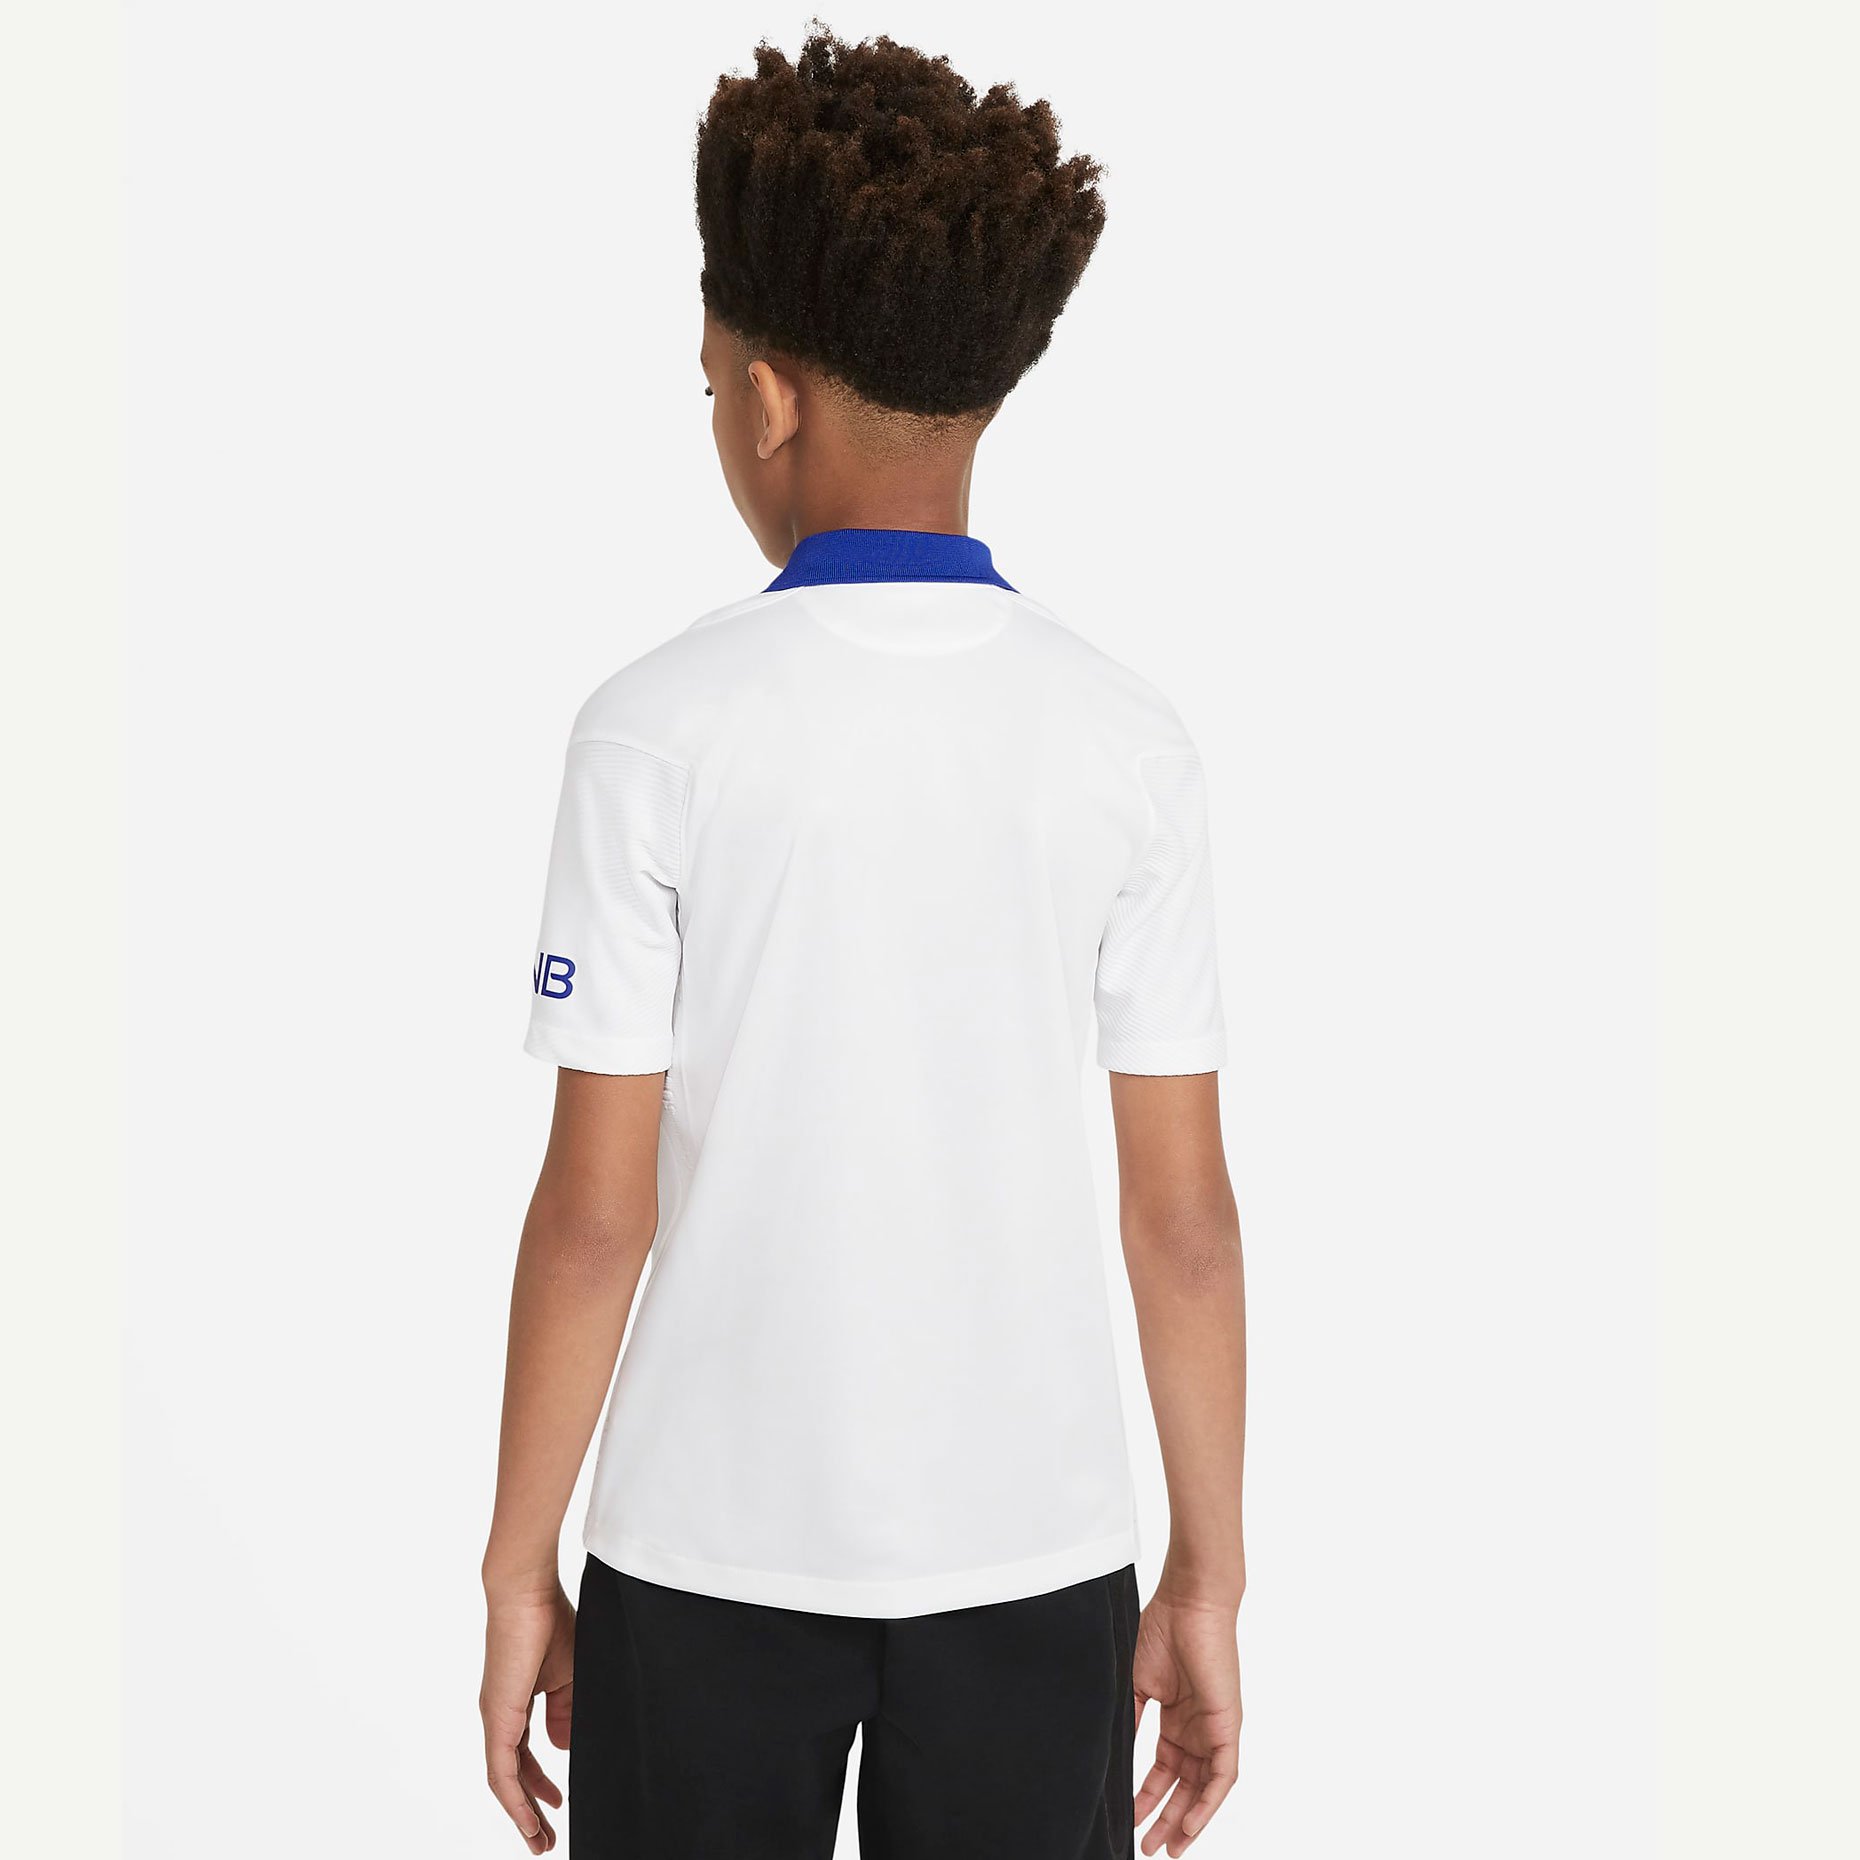 Выездная детская игровая футболка Nike ФК «Пари Сен-Жермен» (ПСЖ/PSG) 2020/21